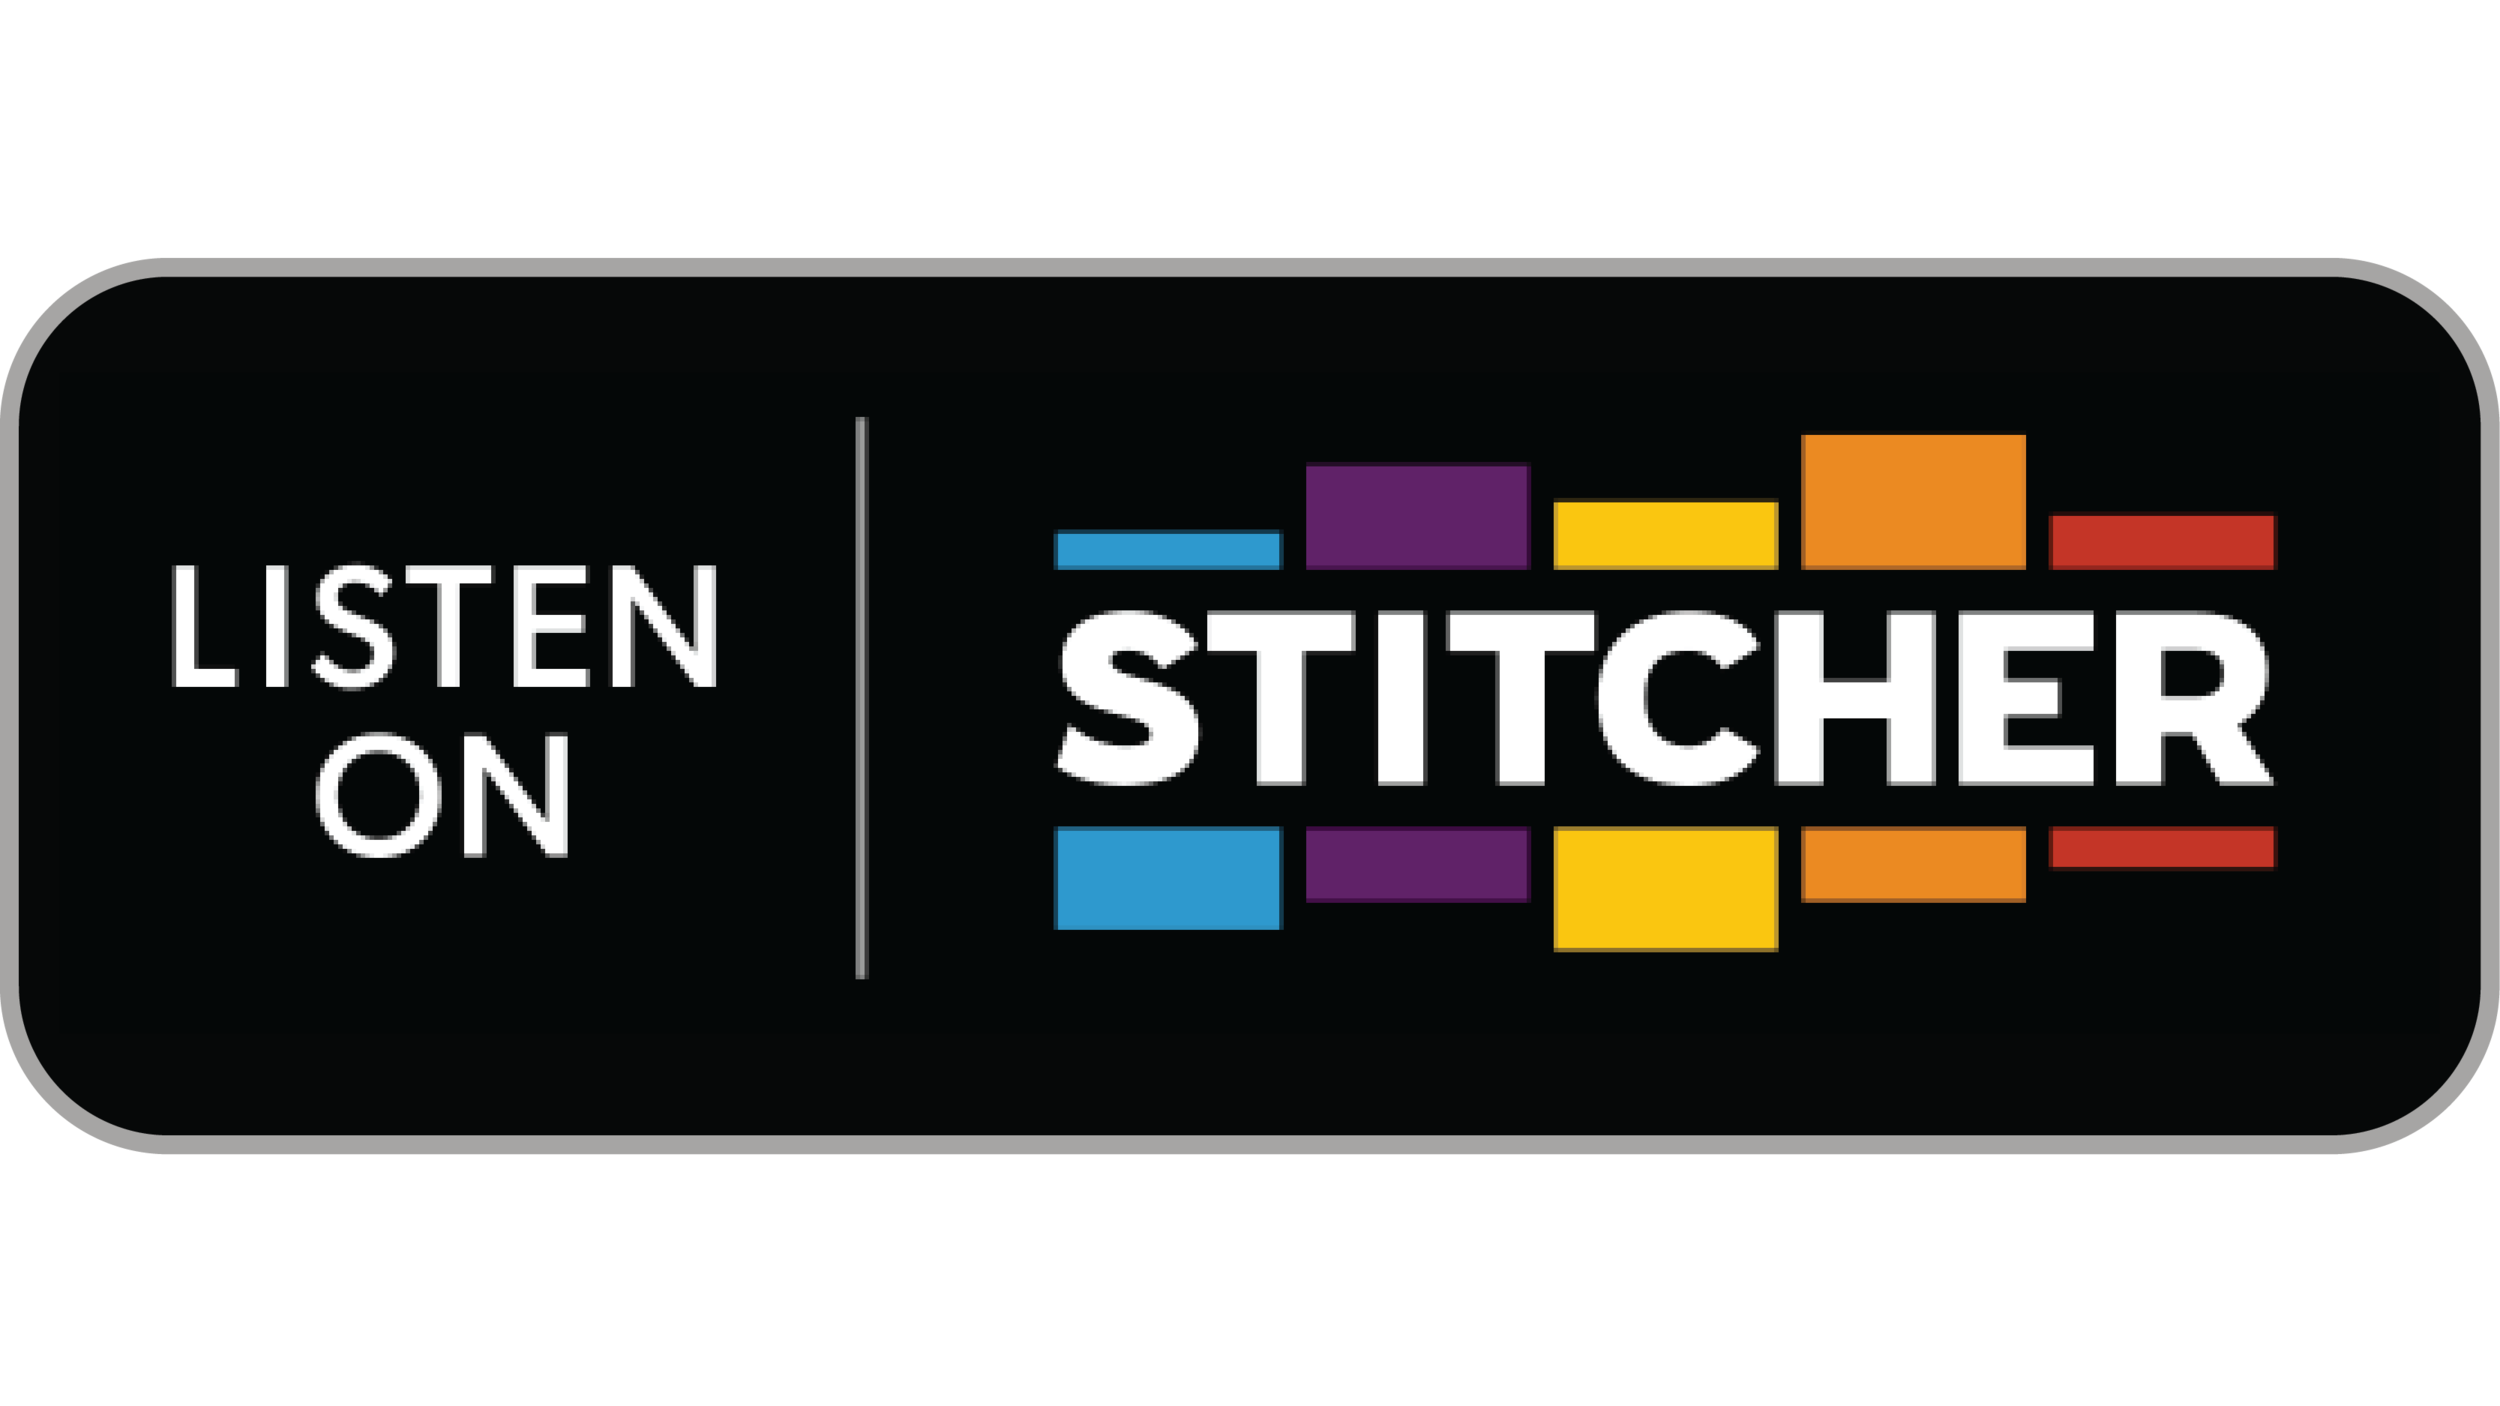 stitcher-01.png